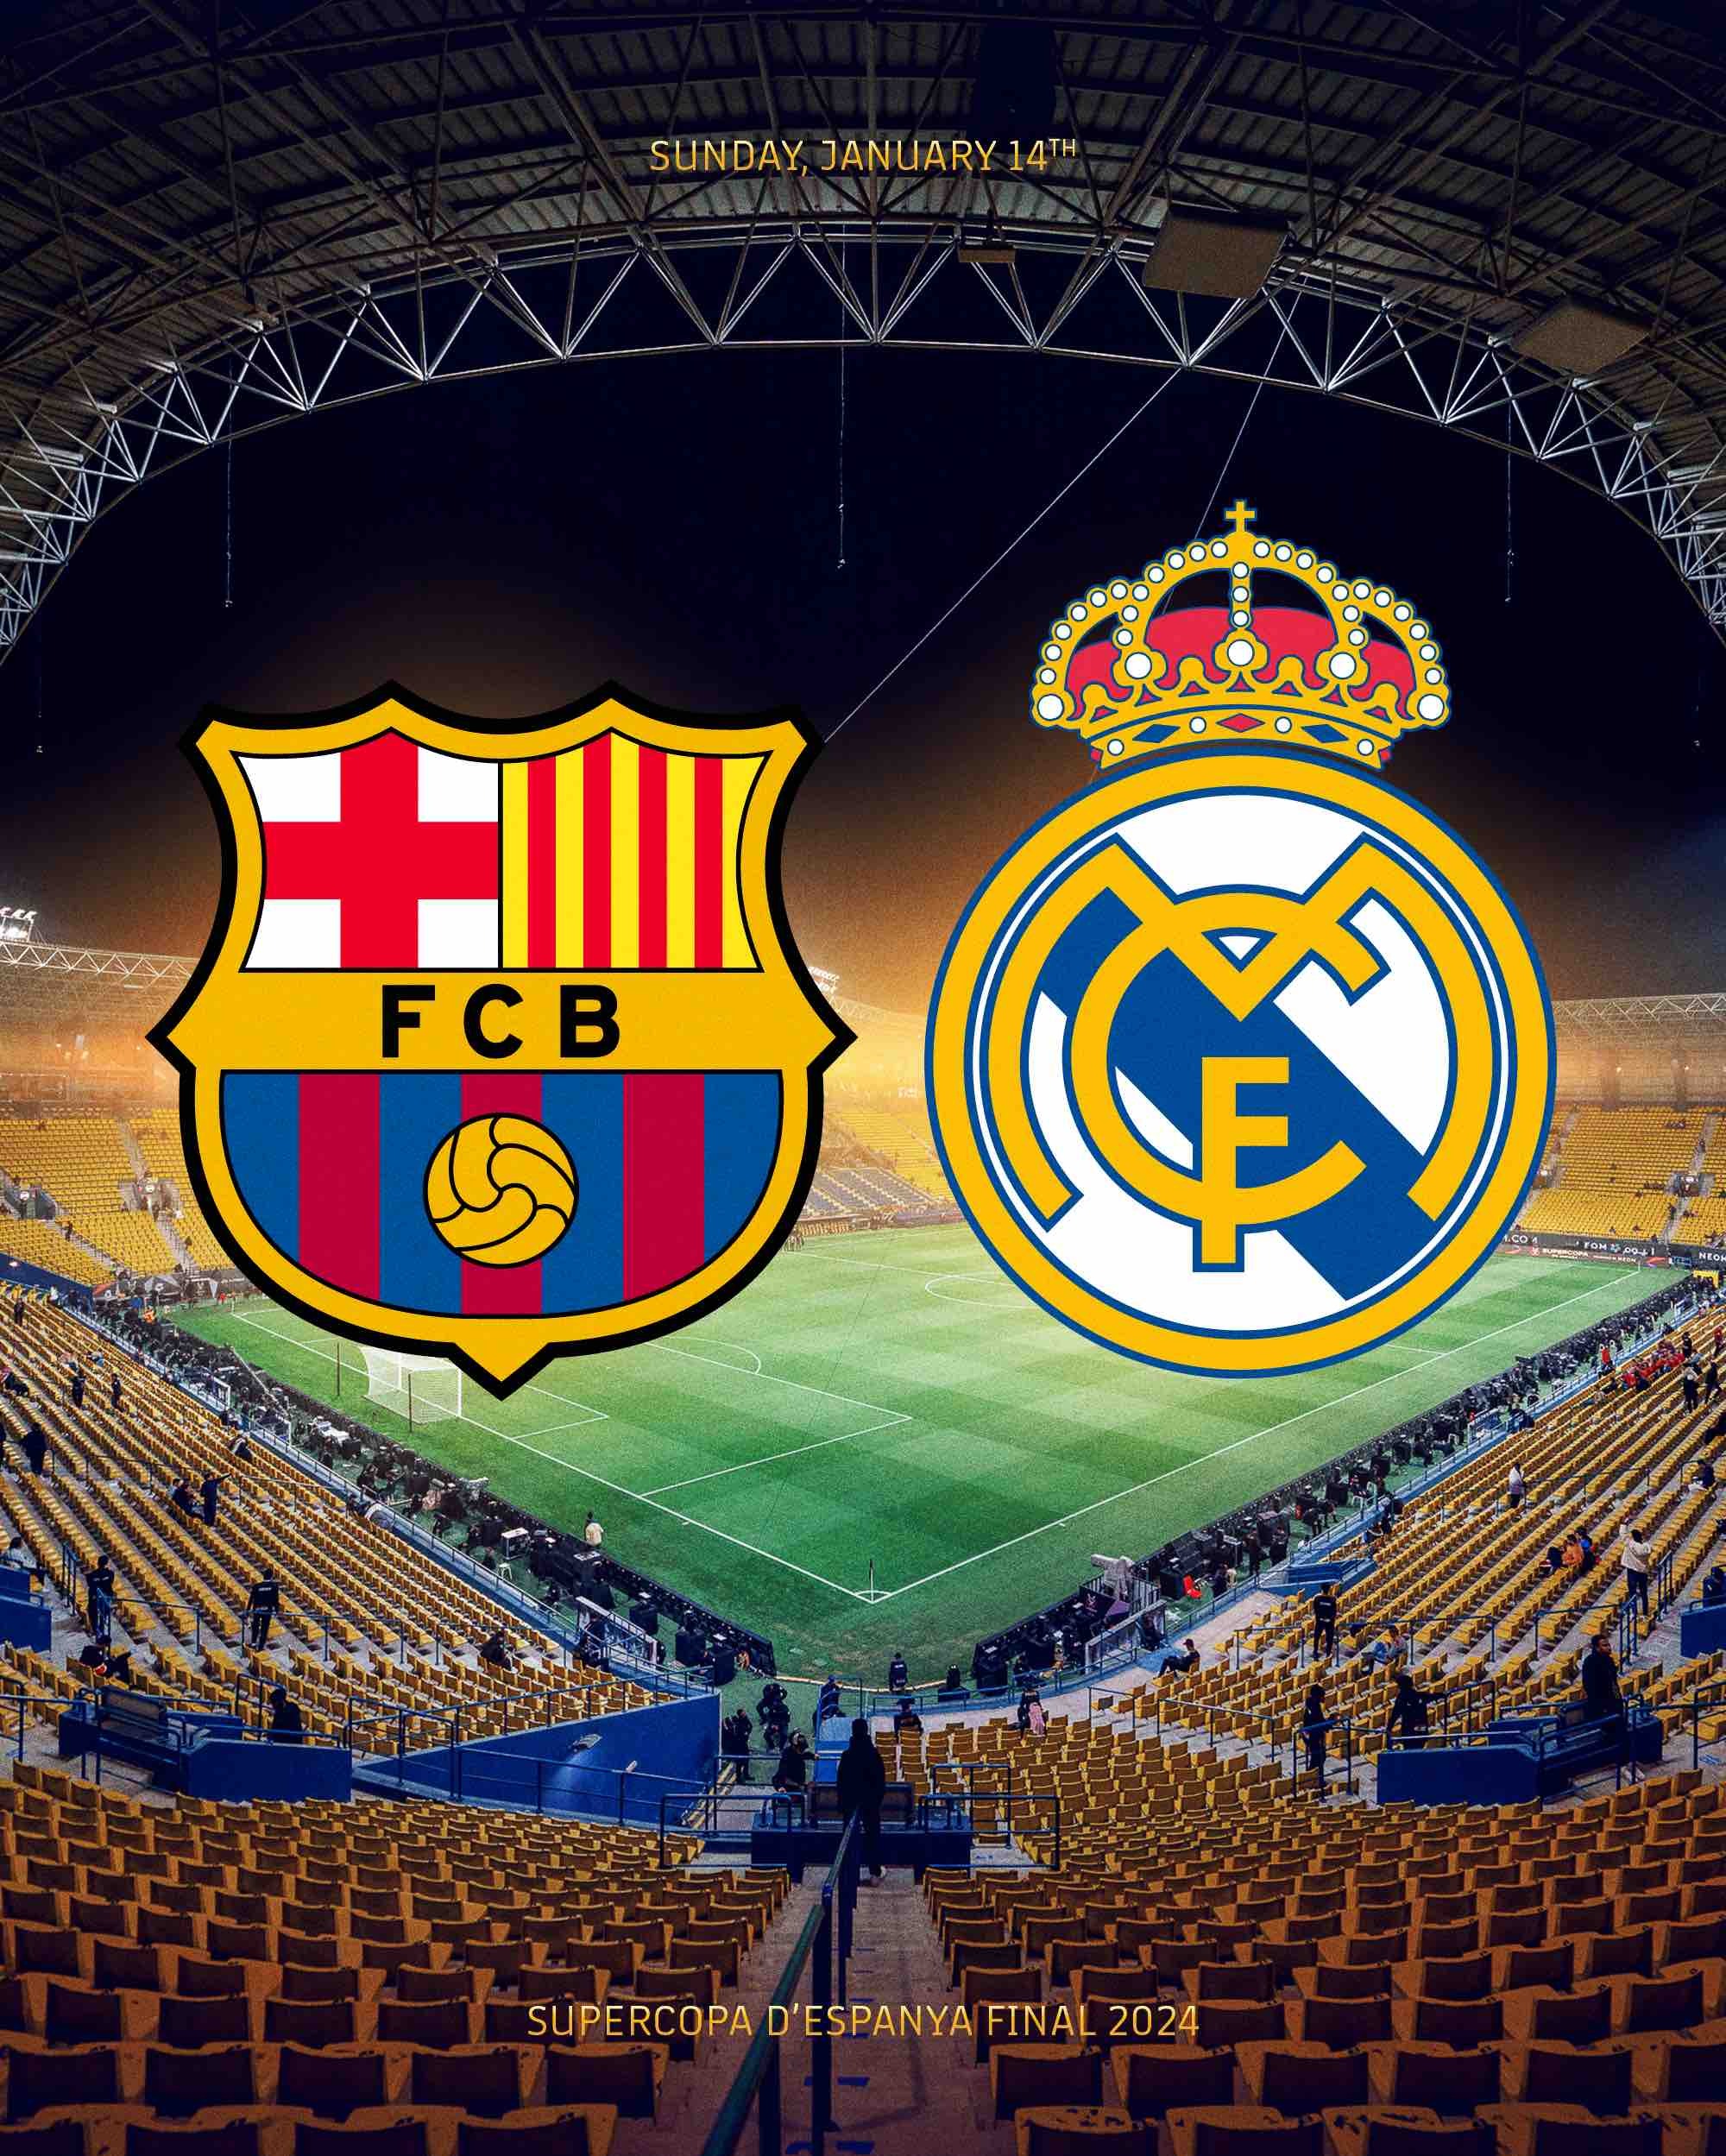 Real Madrid vs. Barcelona jugarán por la Supercopa de España. | Fuente: @FCBarcelona_es